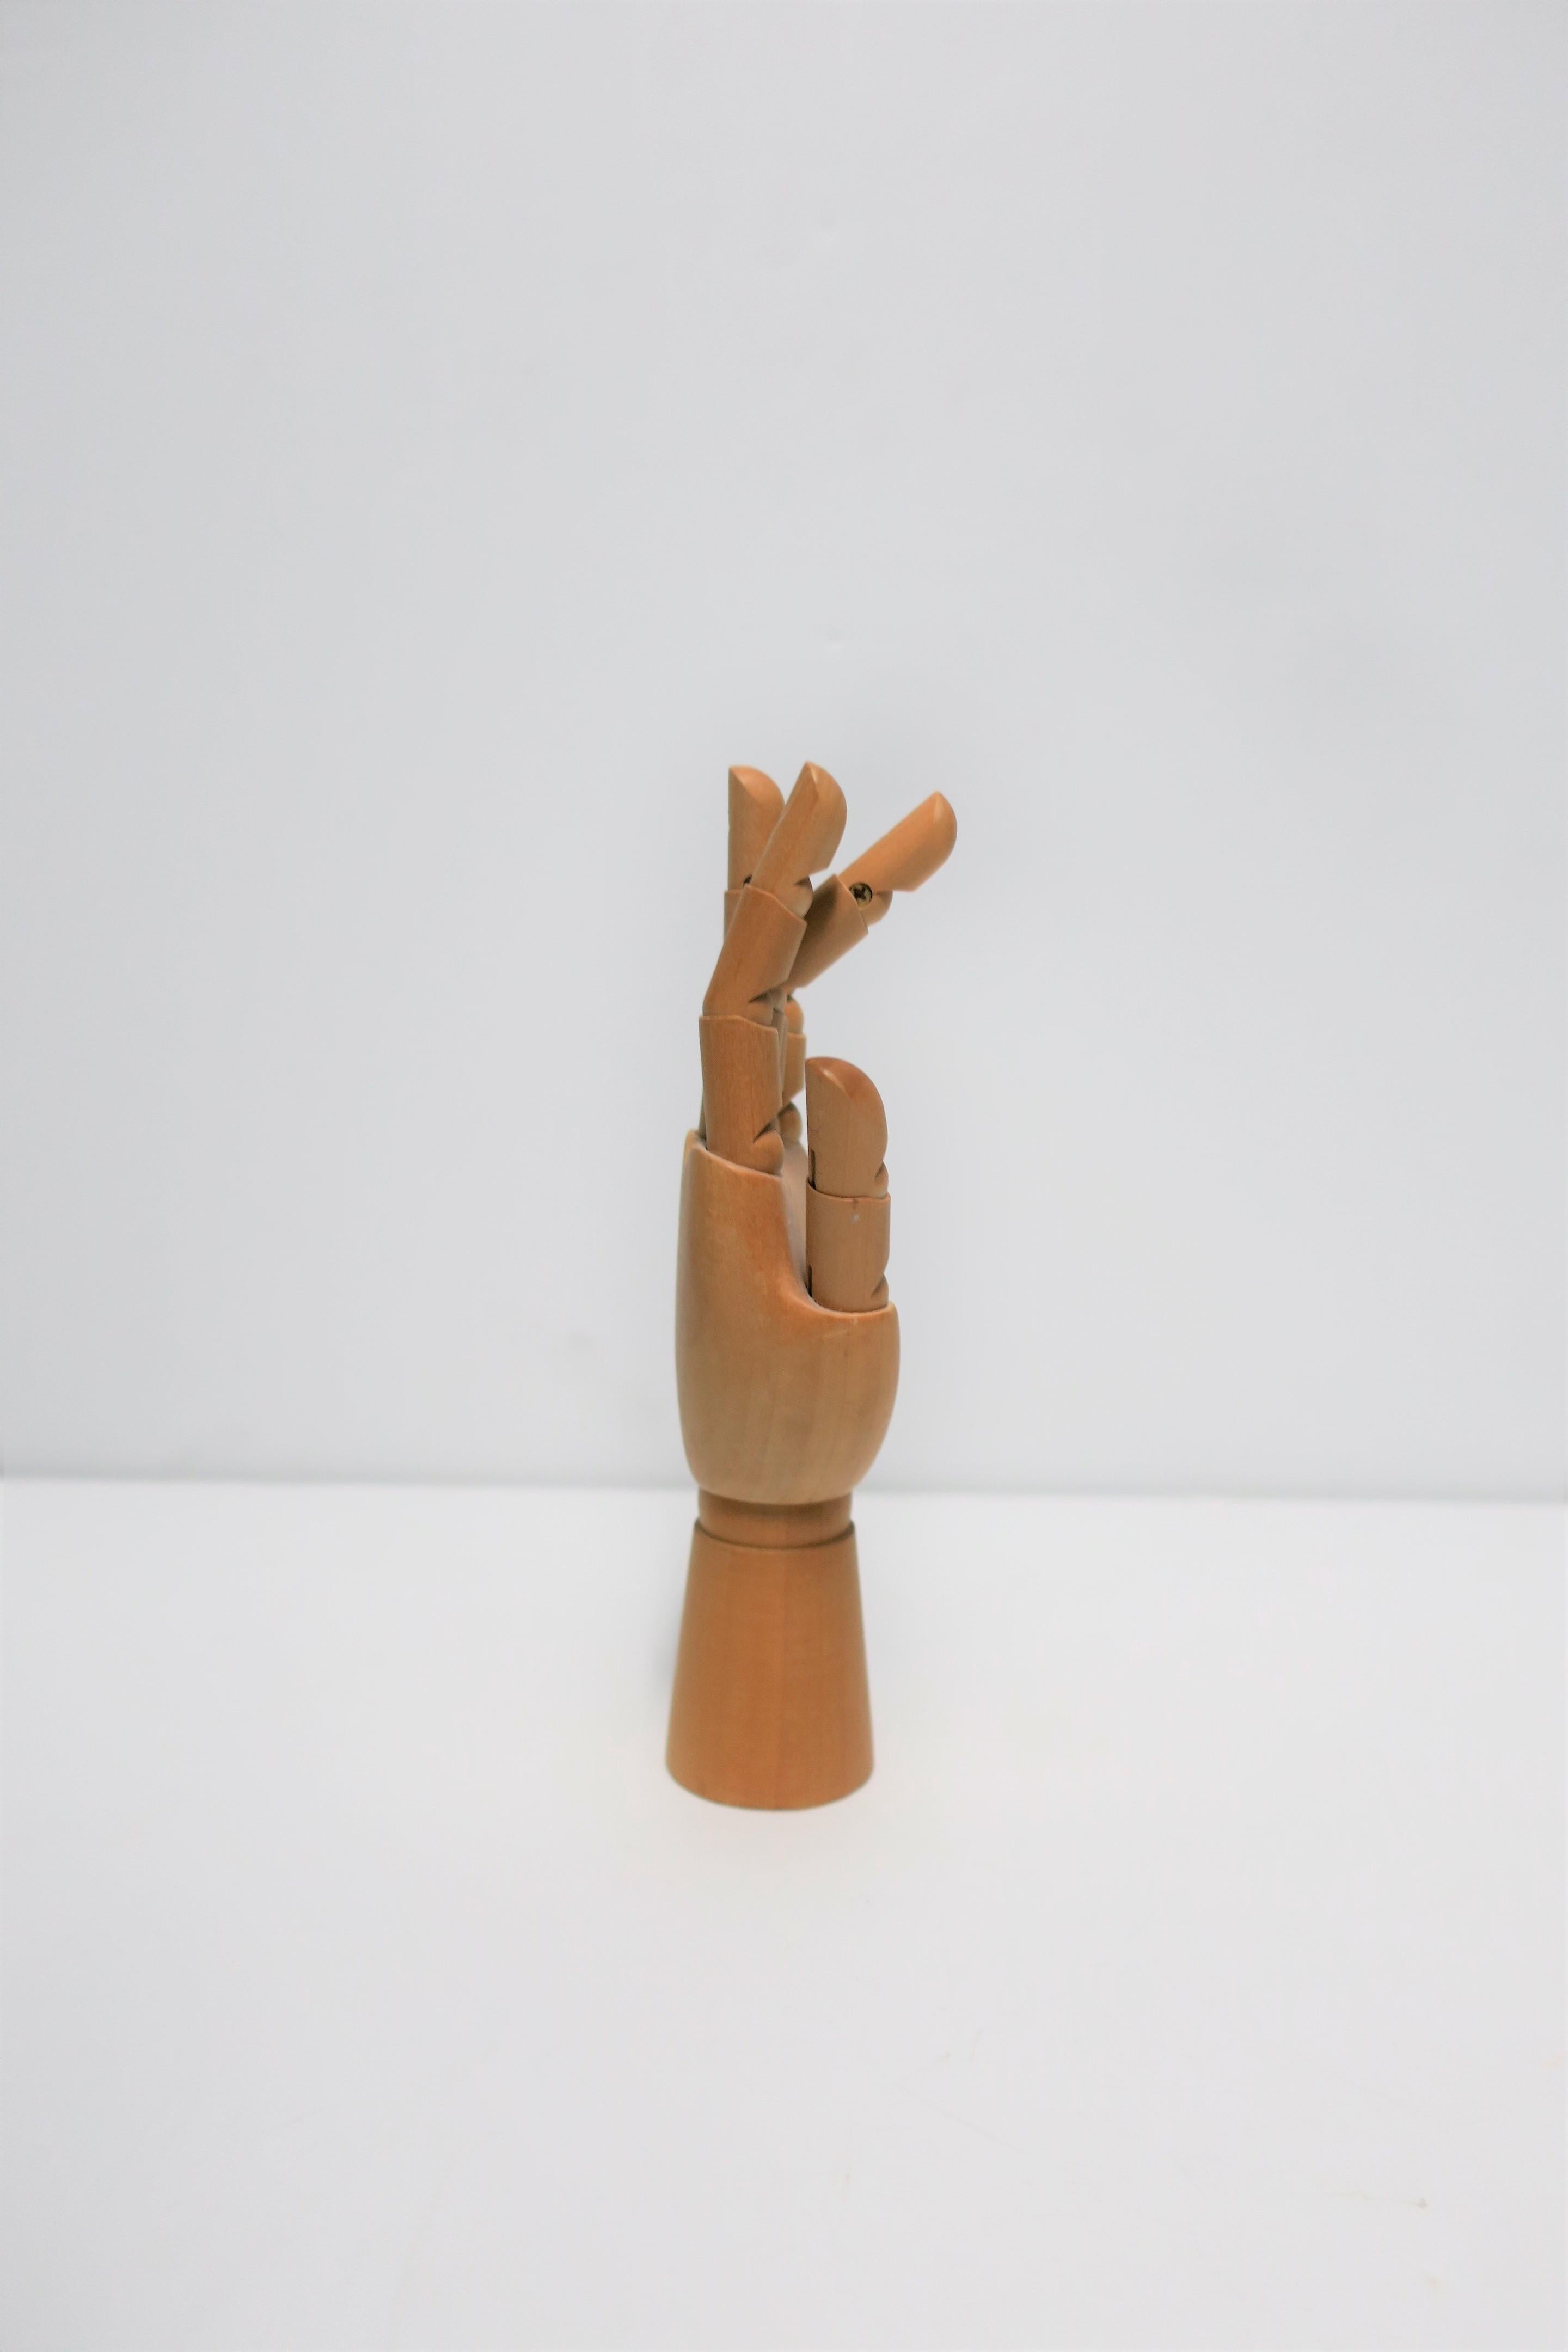 Articulating Wood Hand Sculpture Piece 6